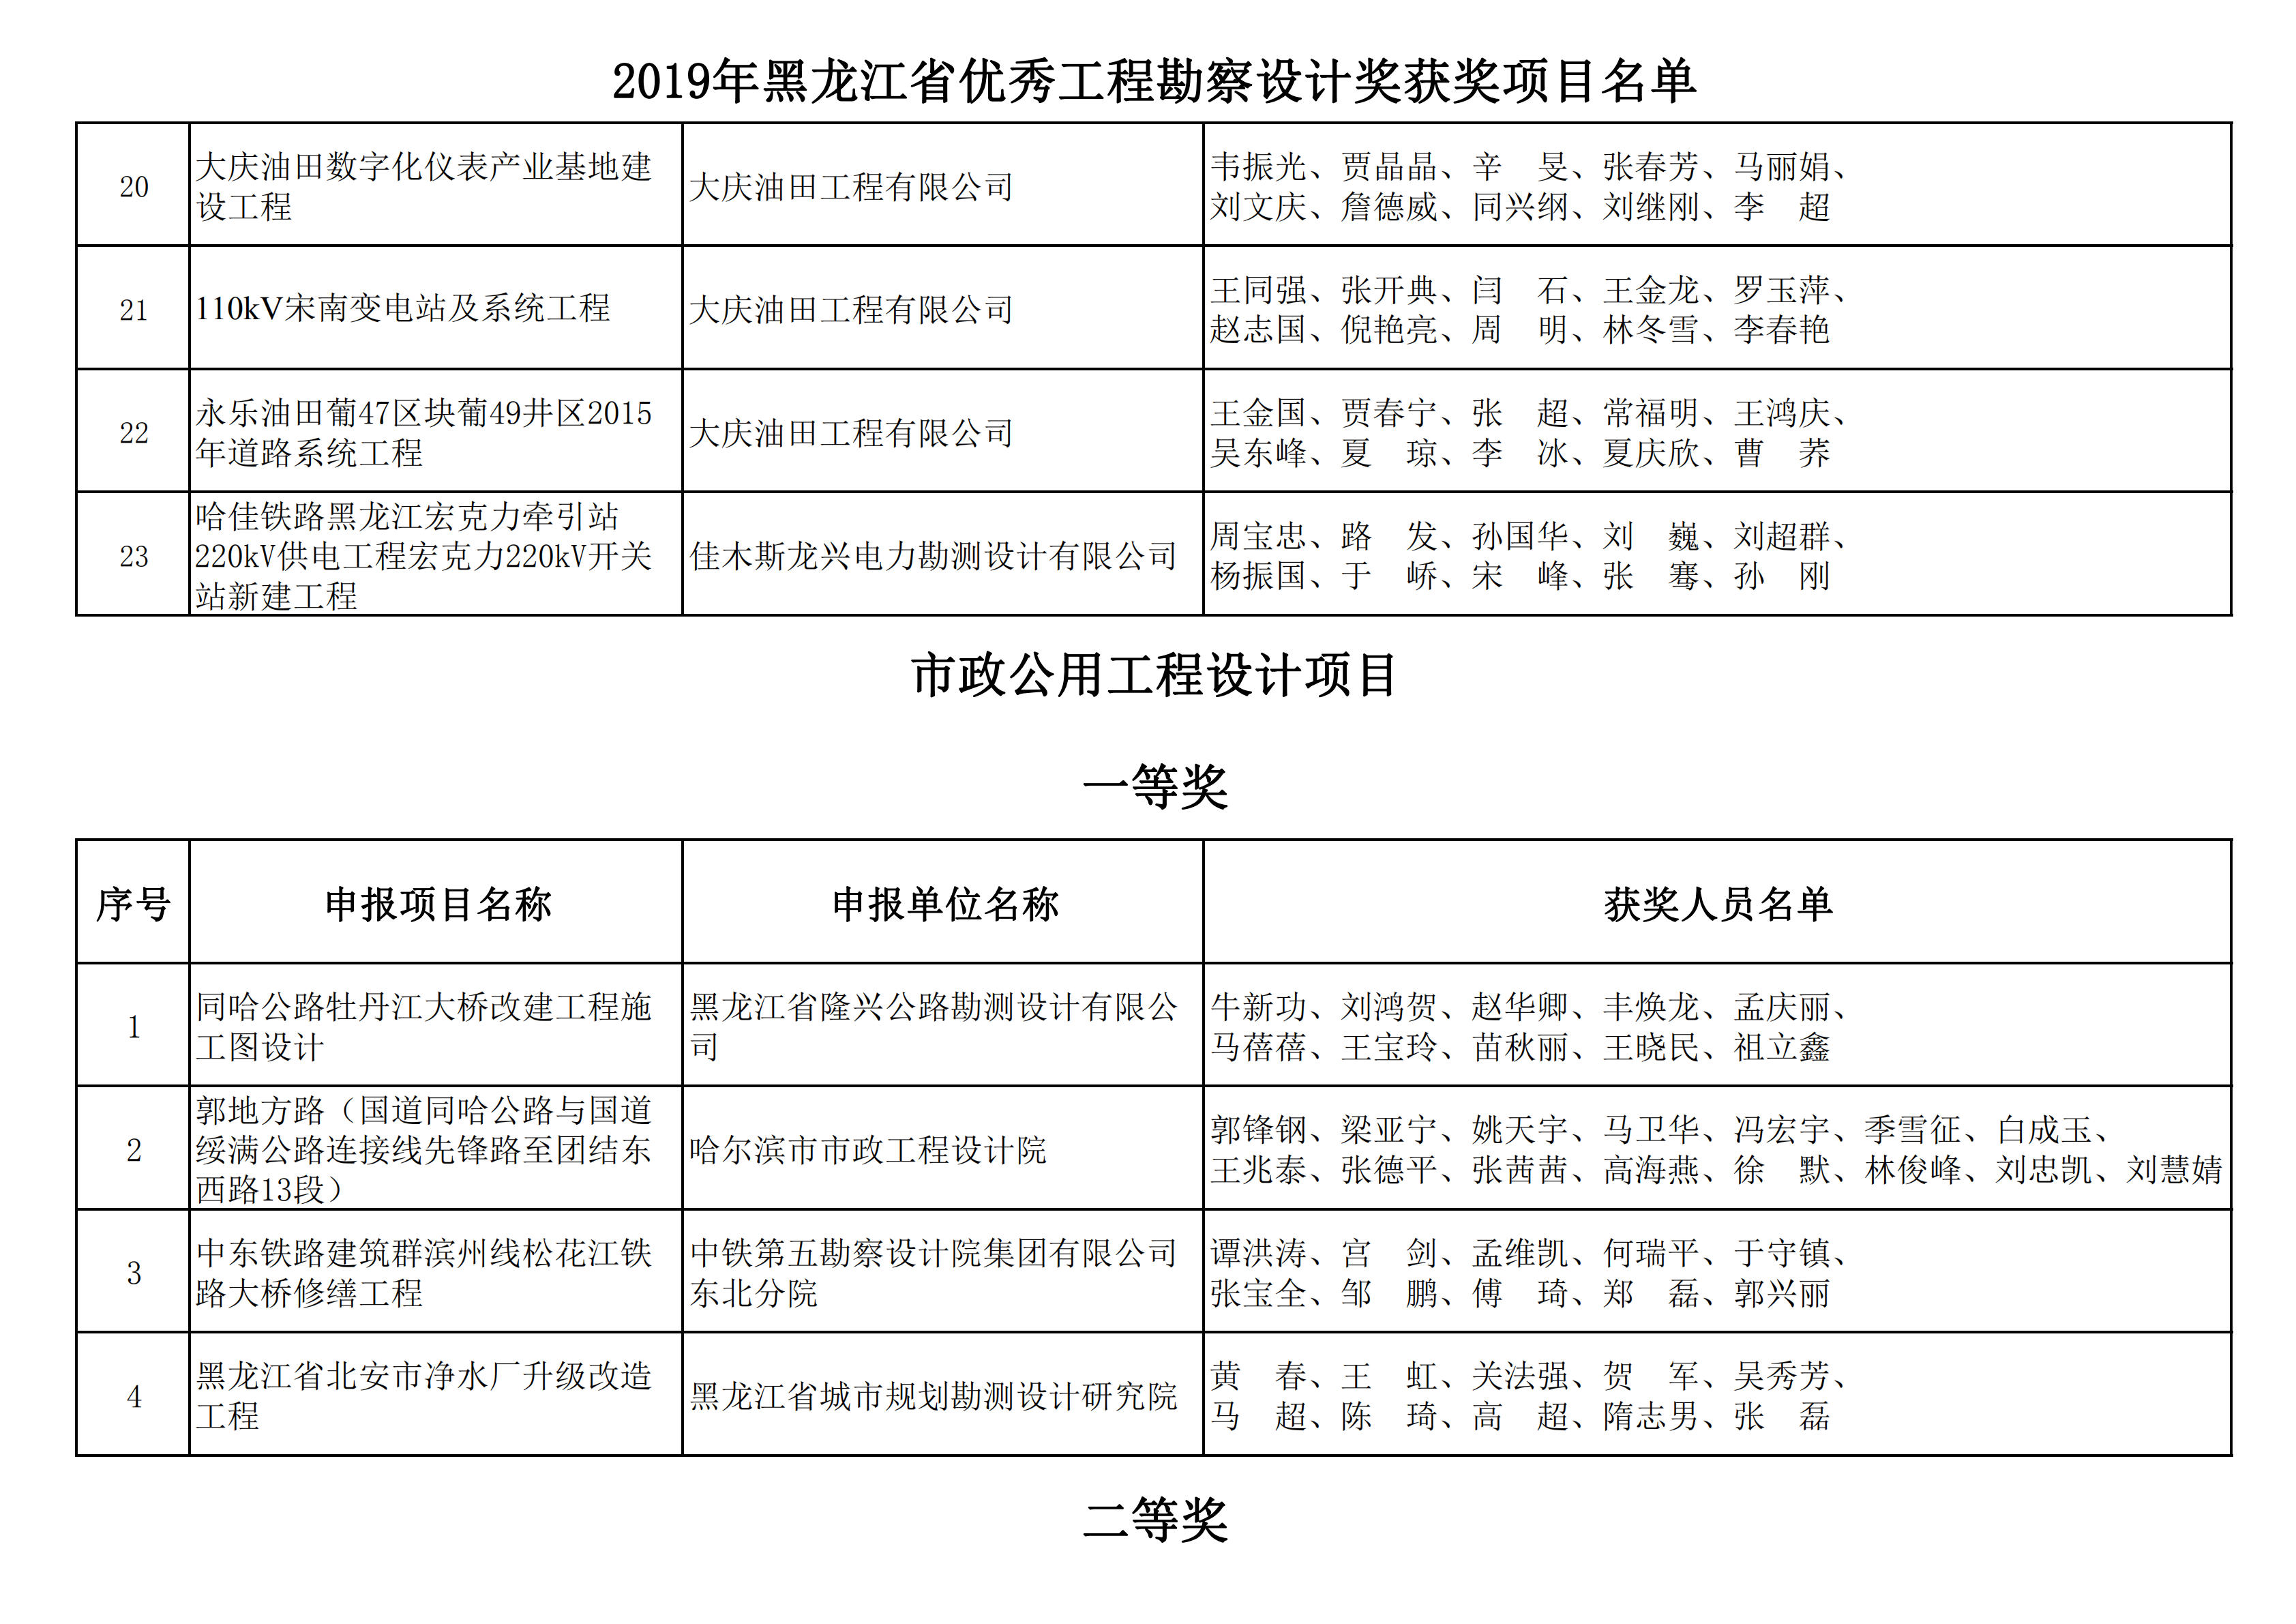 2019年黑龙江省优秀工程勘察设计奖获奖项目名单_14.png